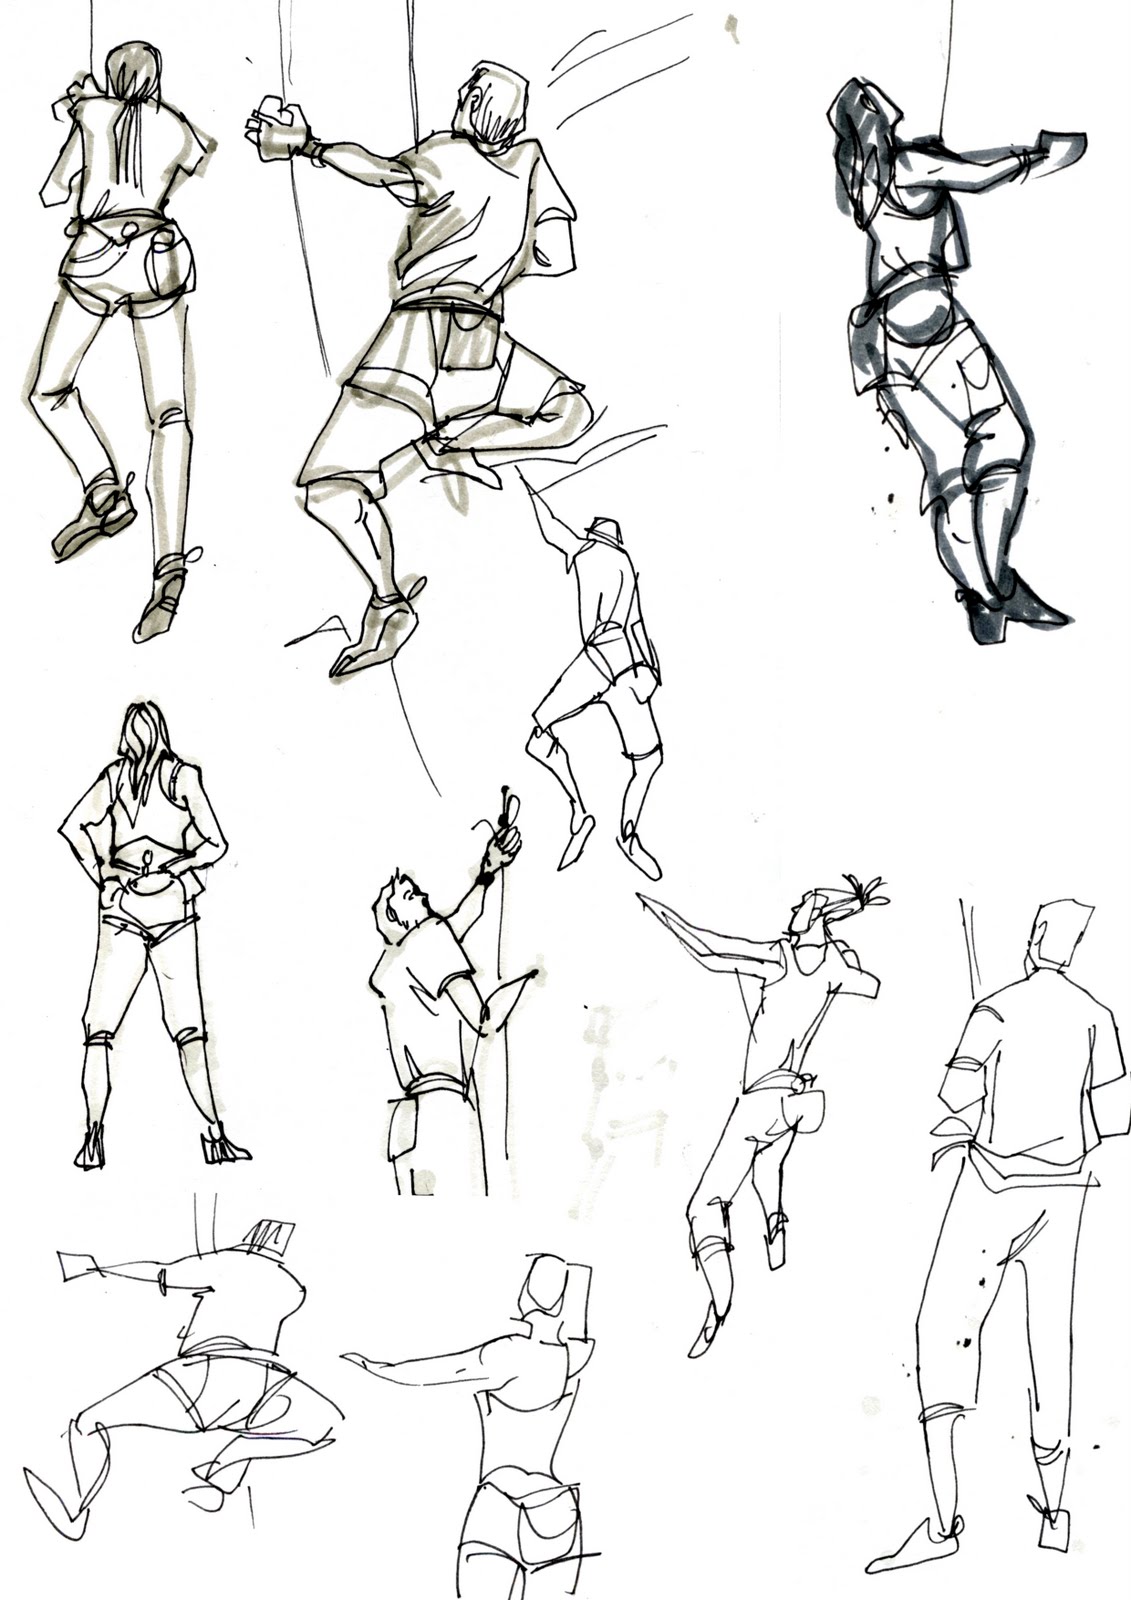 My Sketchblog: Climbing sketches